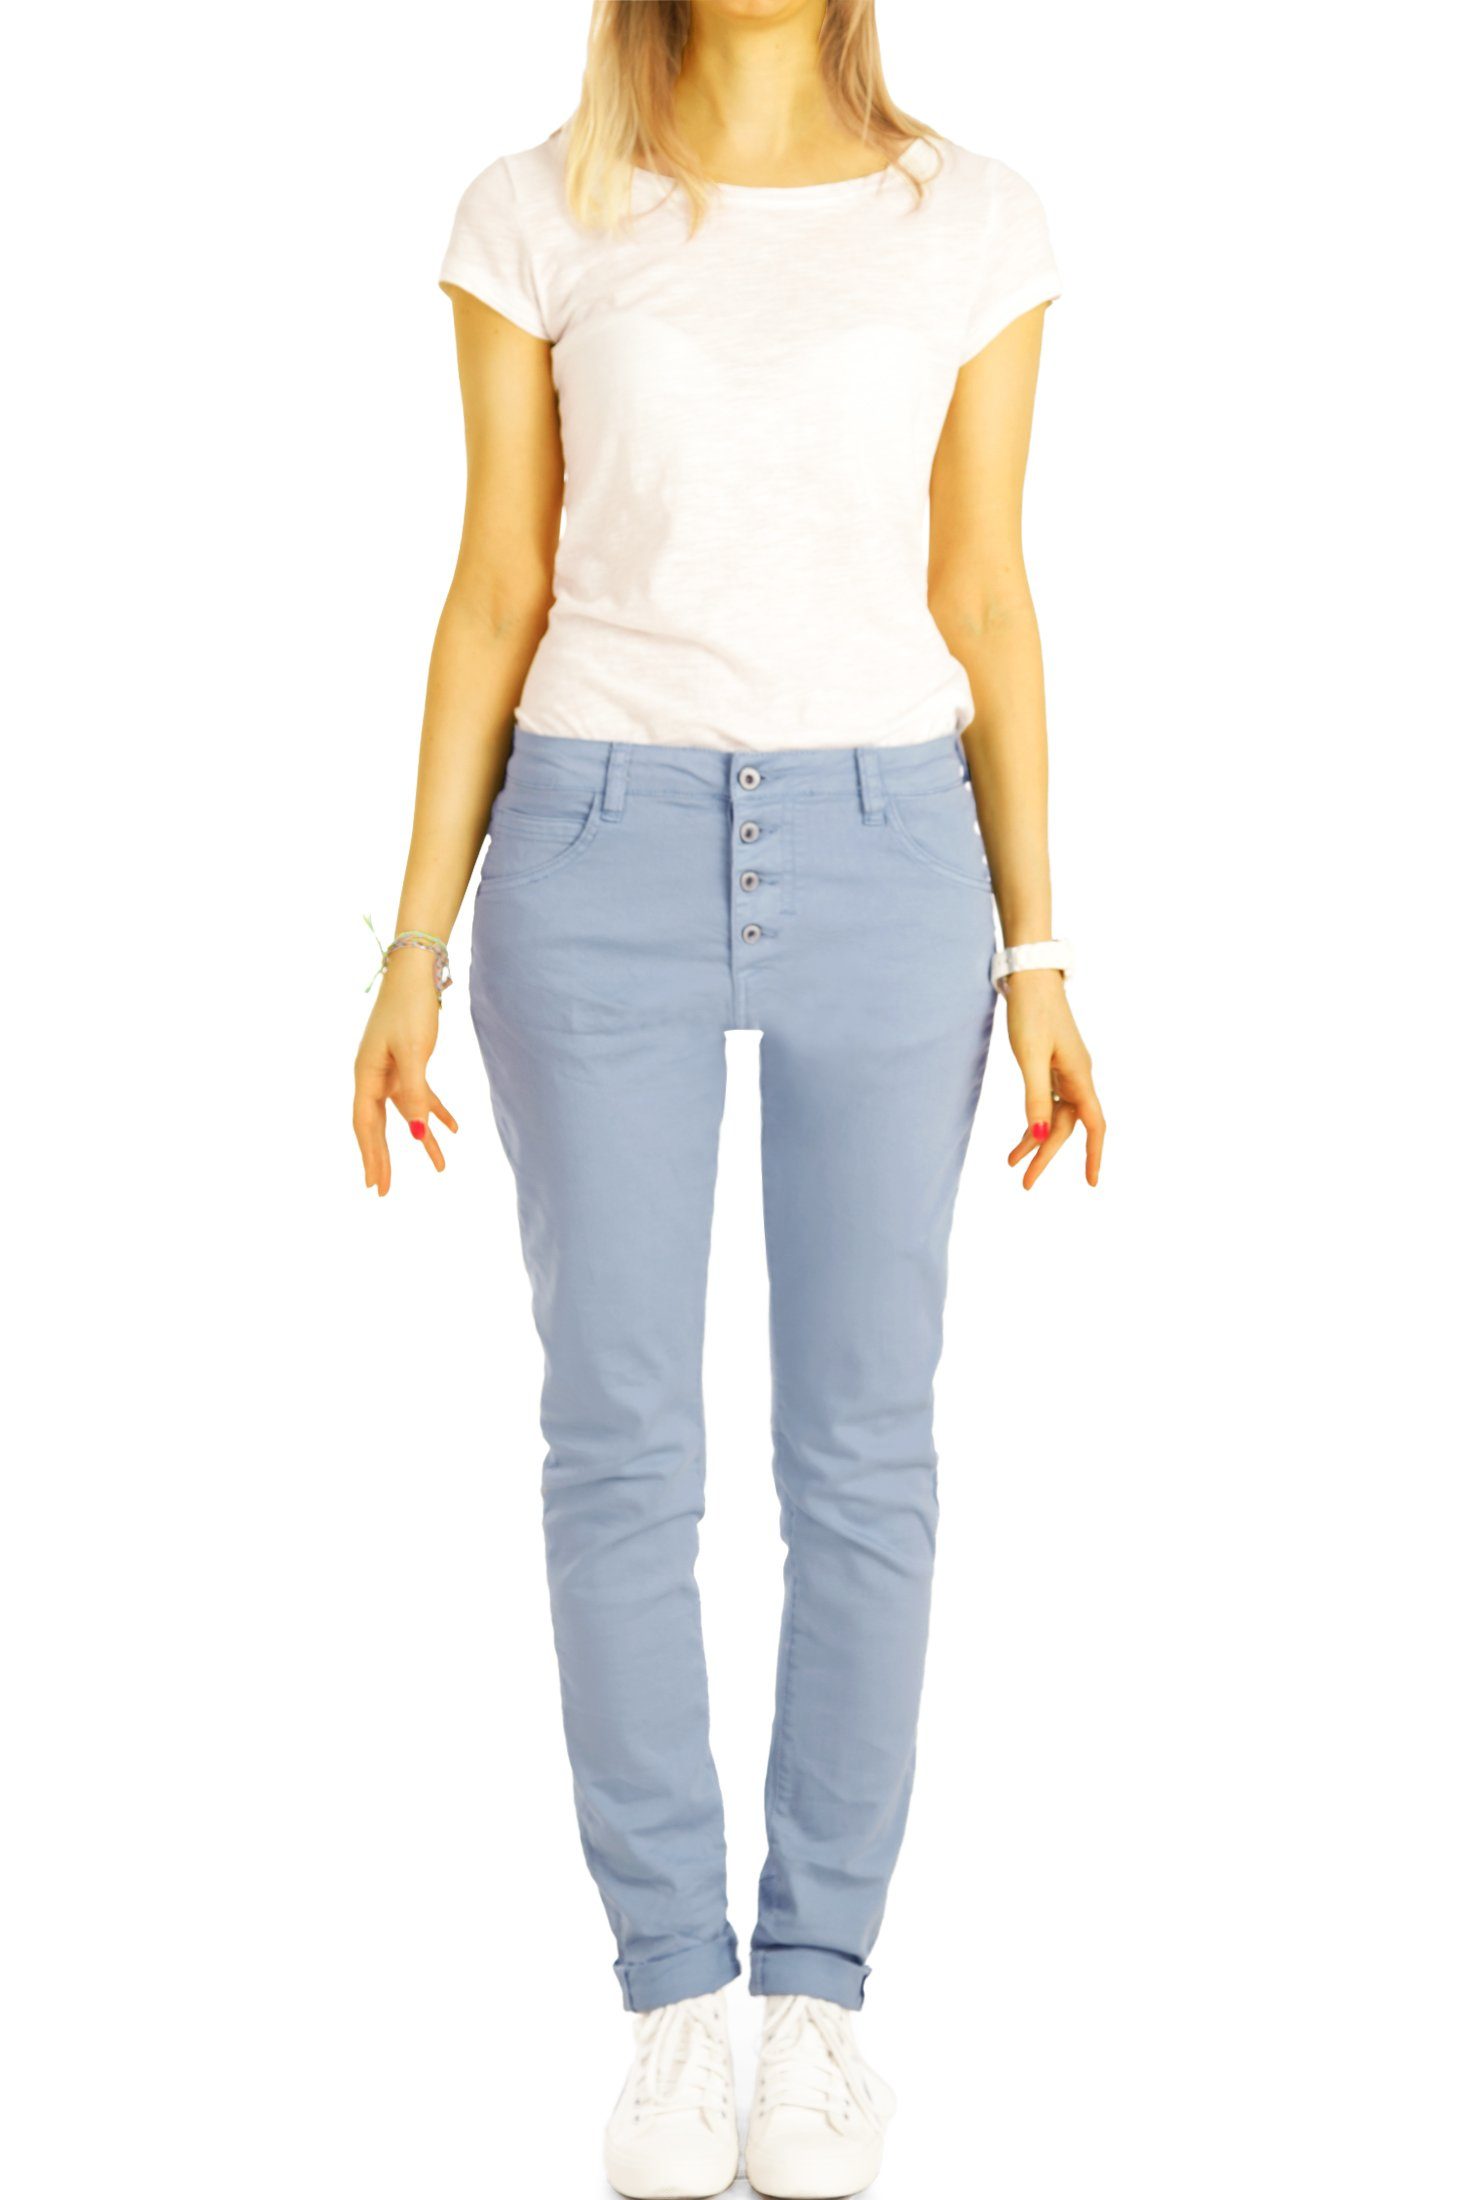 Jeans - - j30L-3 Damen Stoffhose mit vordere Hose weiß Waist be Knopfleiste Medium styled Boyfriend Knopfleiste